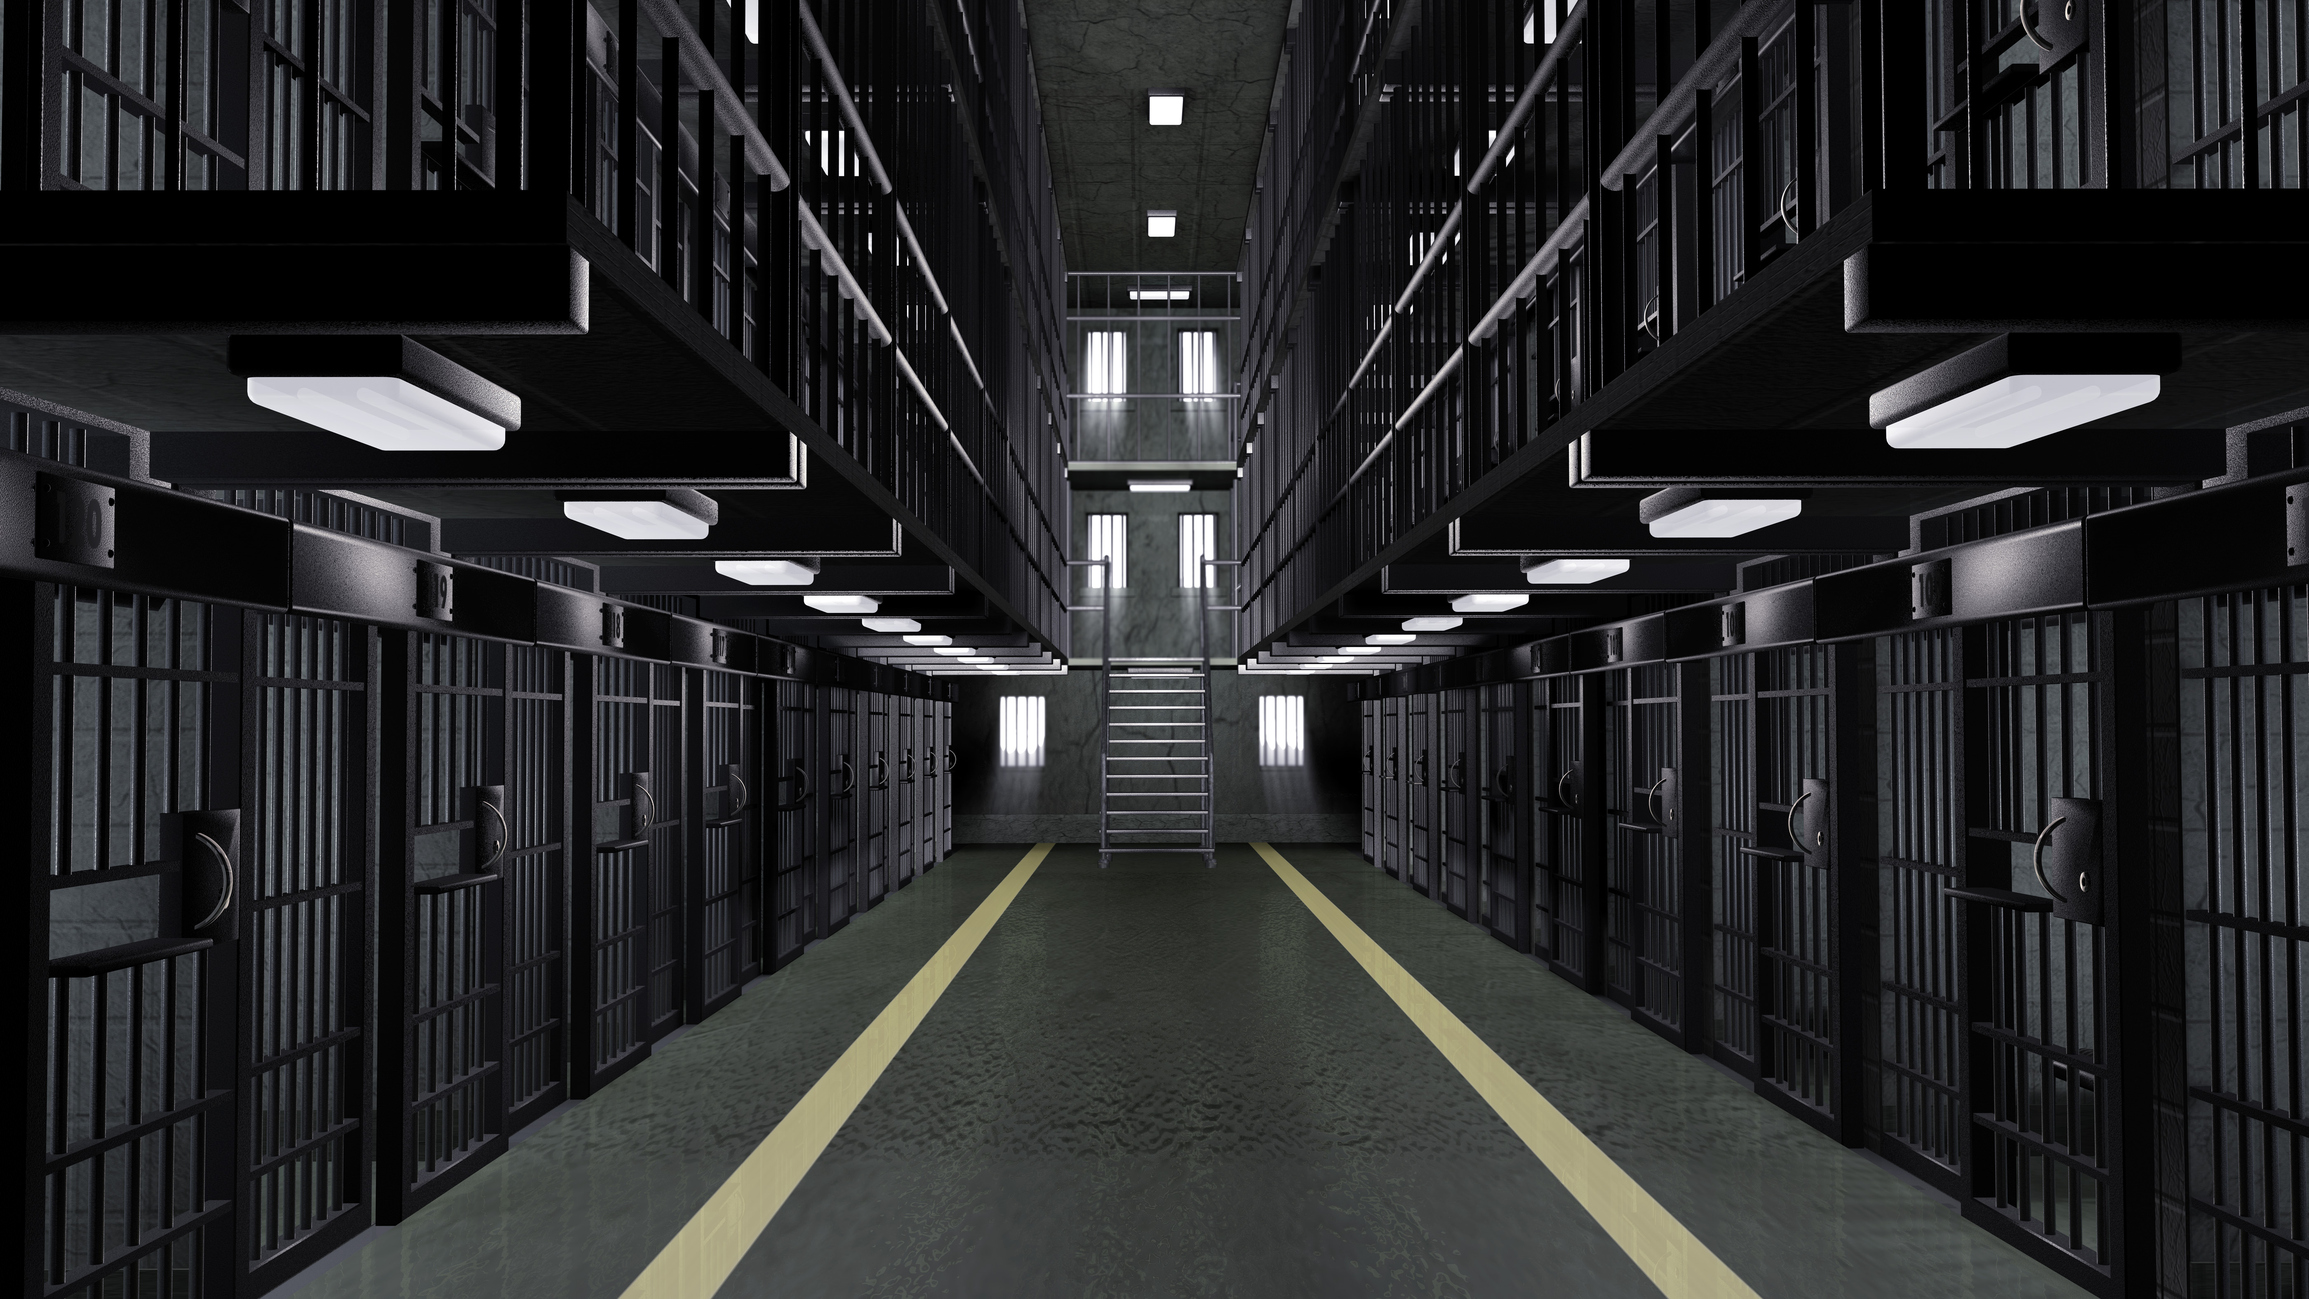 jail/prison hallway